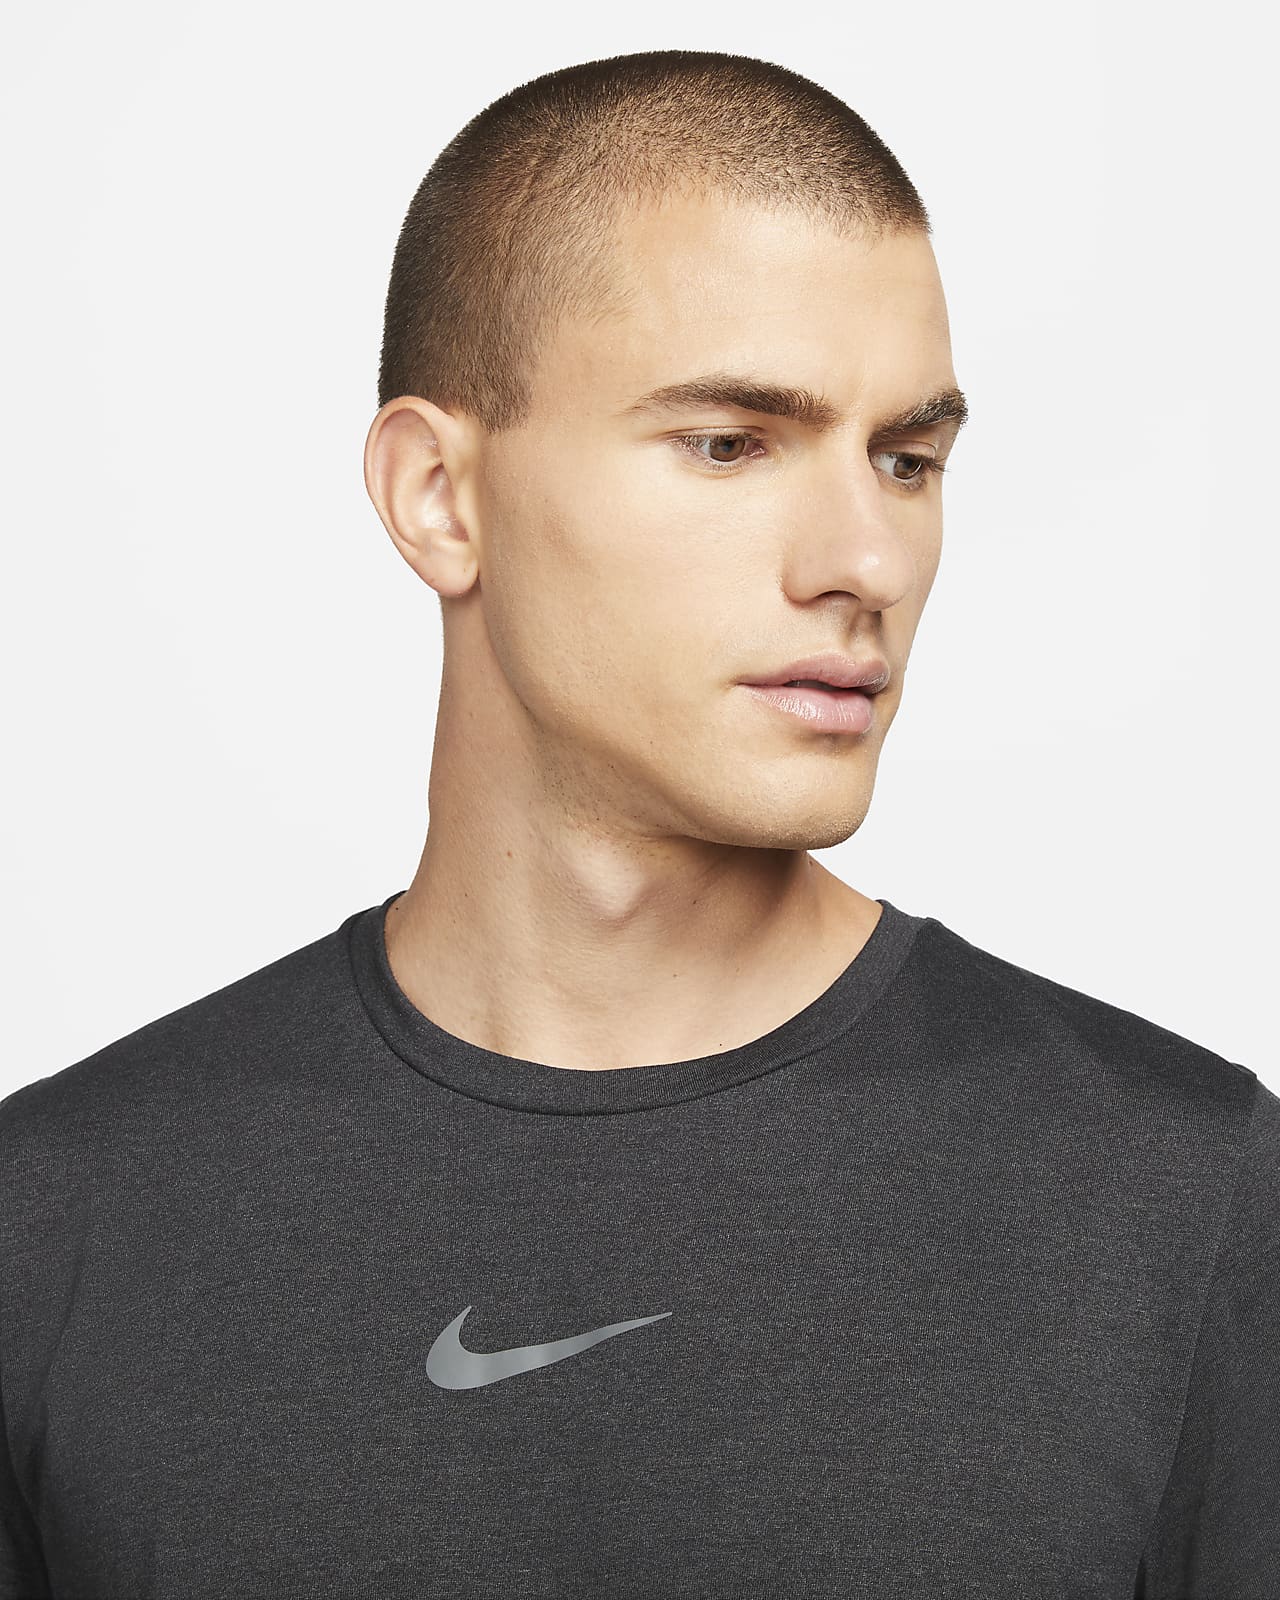 Nike Pro Dri-FIT Burnout Men's Short-Sleeve Top. Nike ZA